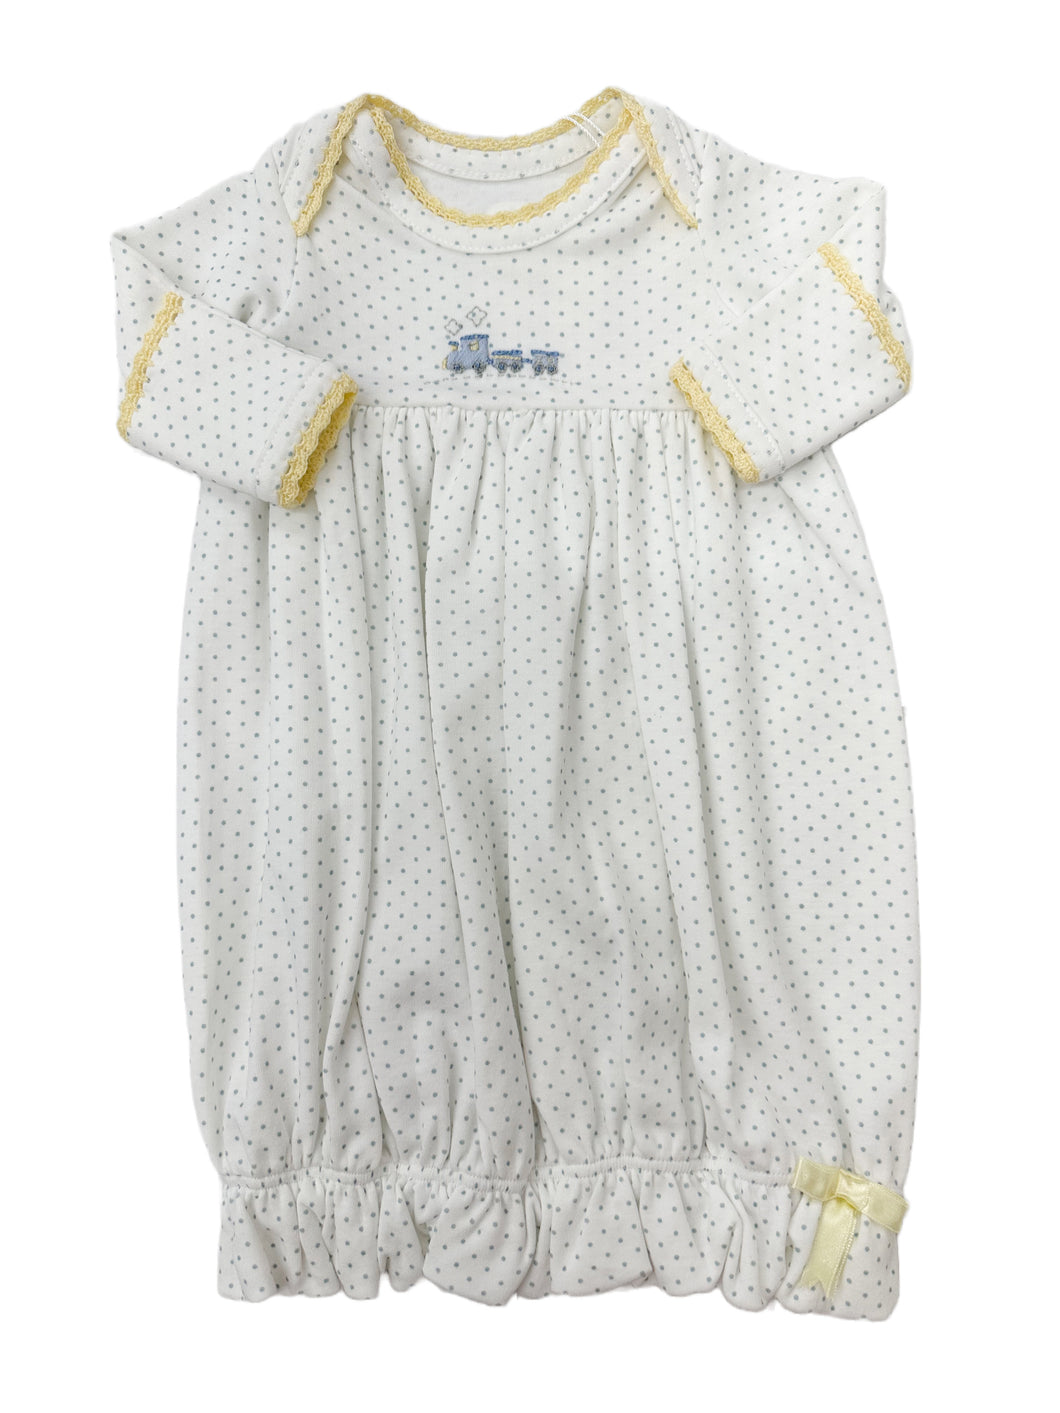 Mini Baby Train Lap Shoulder Gown